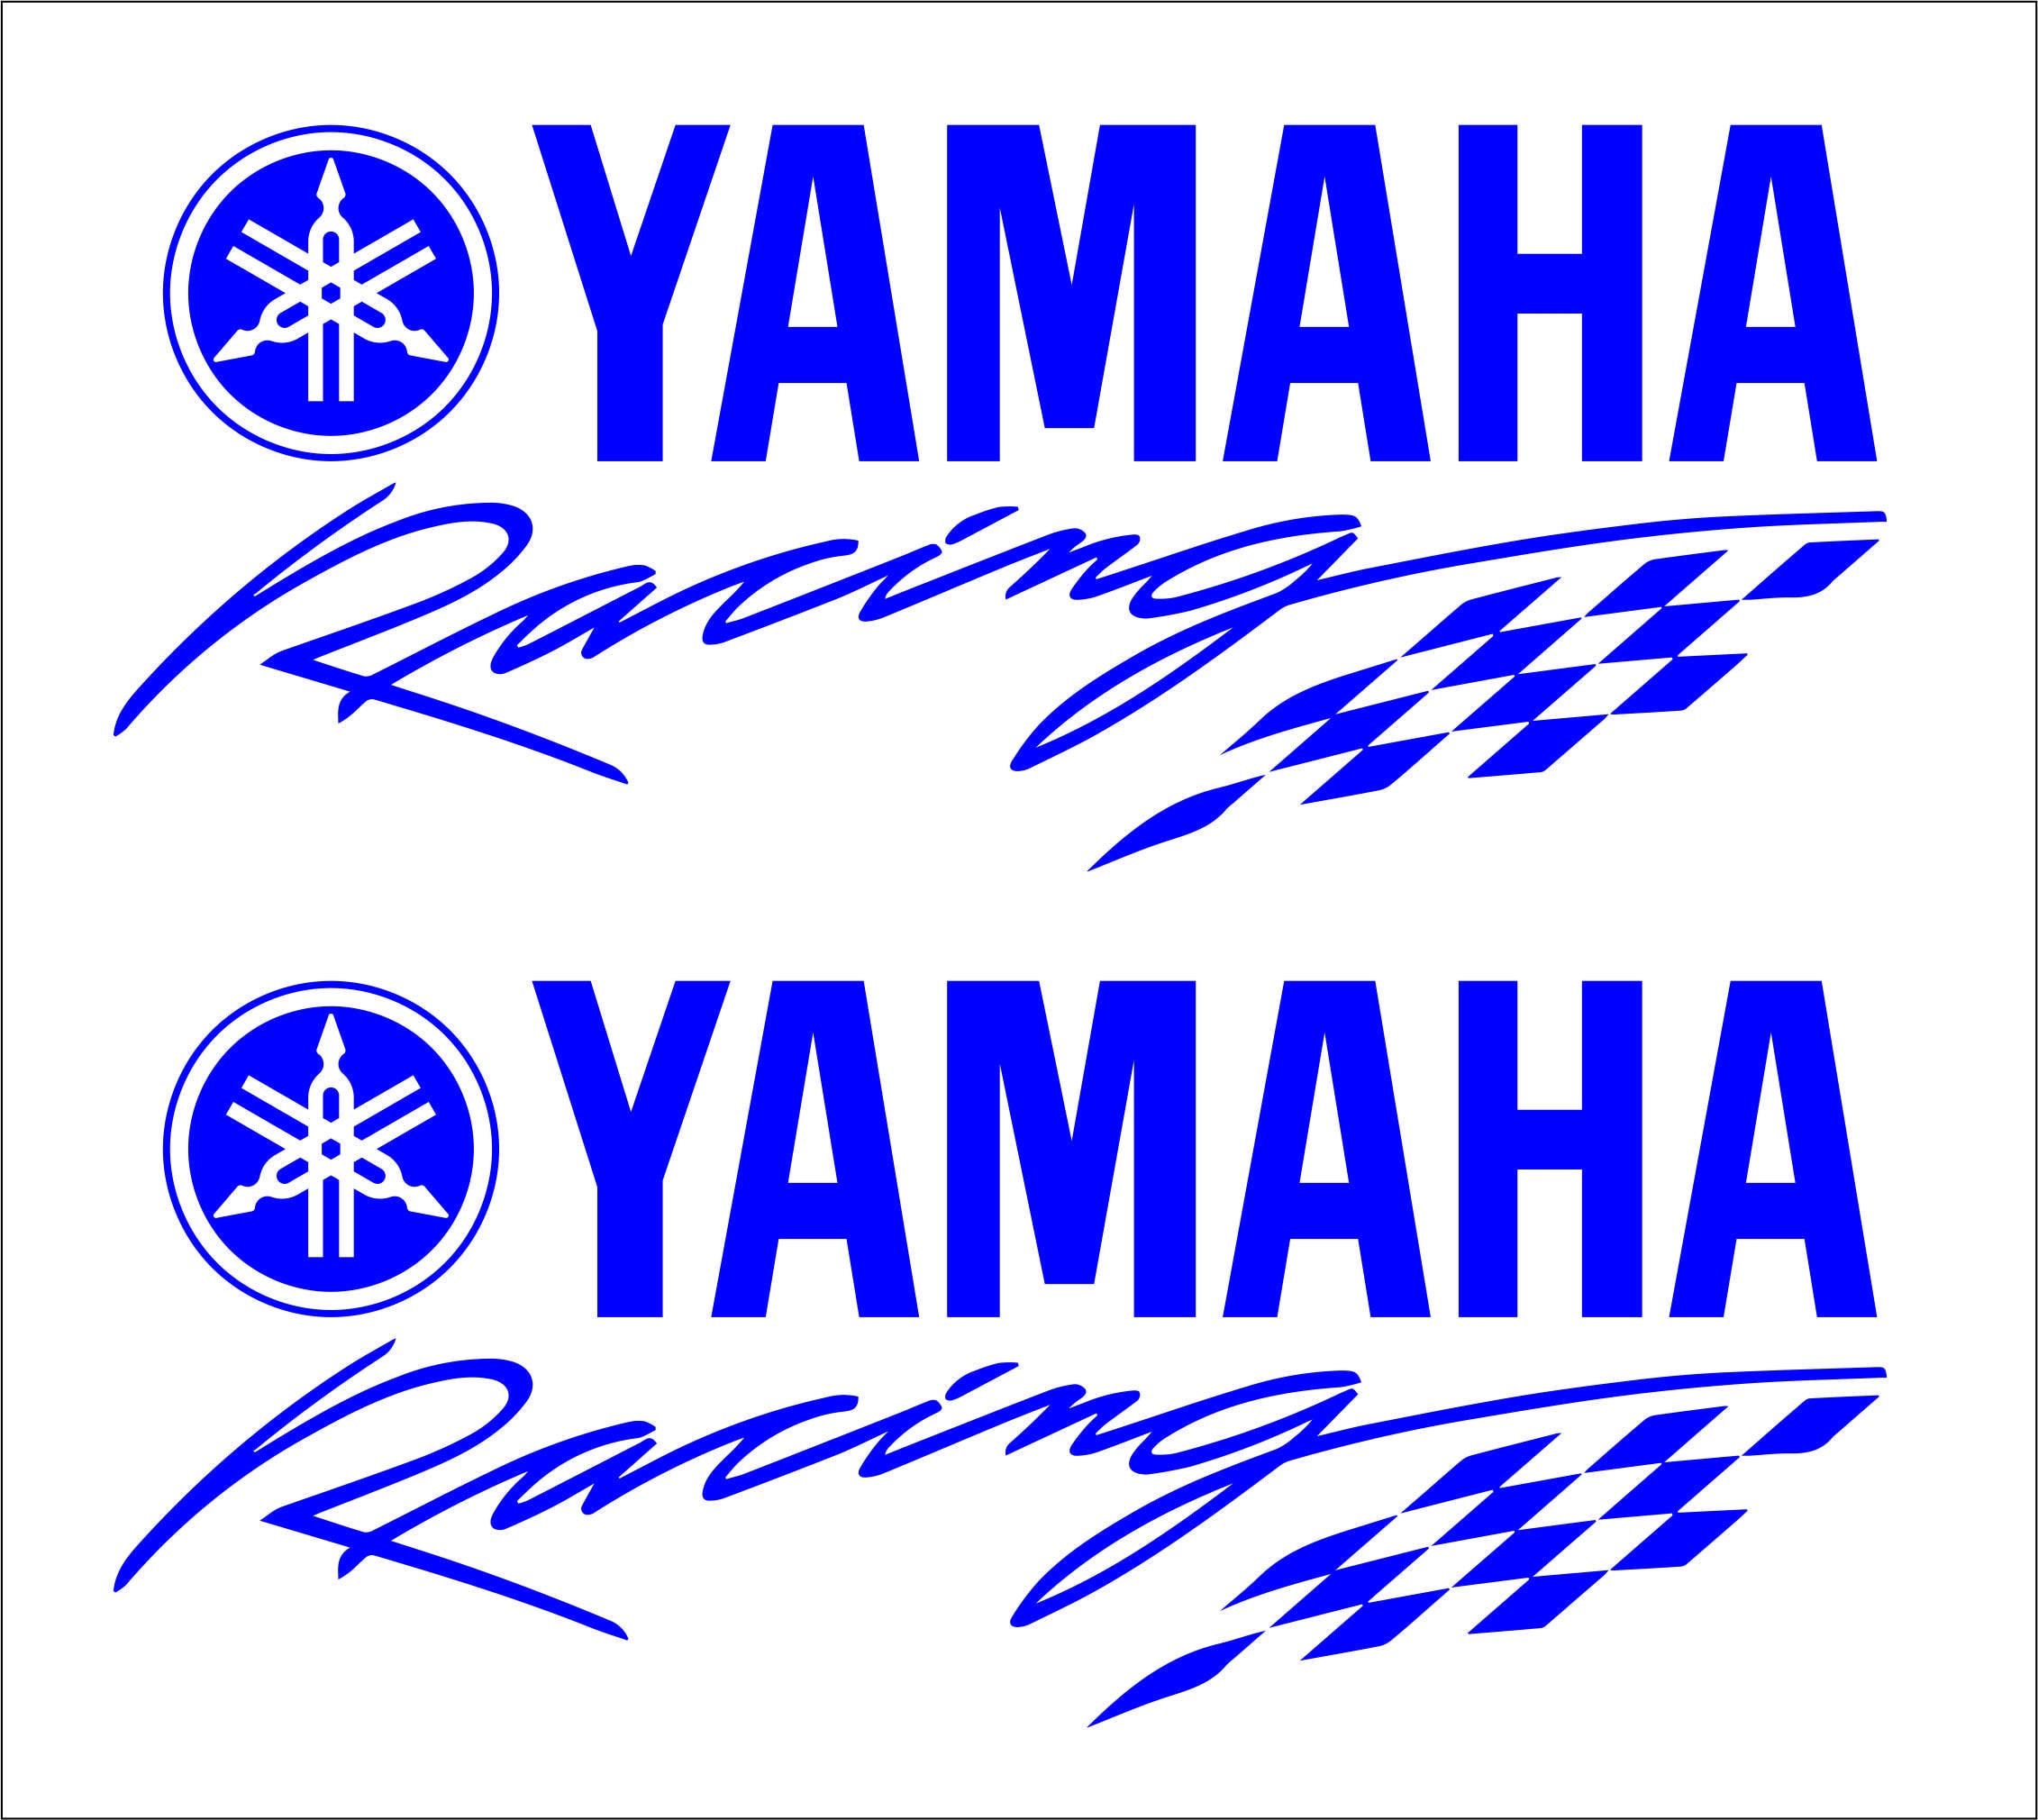 Pegatinas YAMAHA Racing Azul